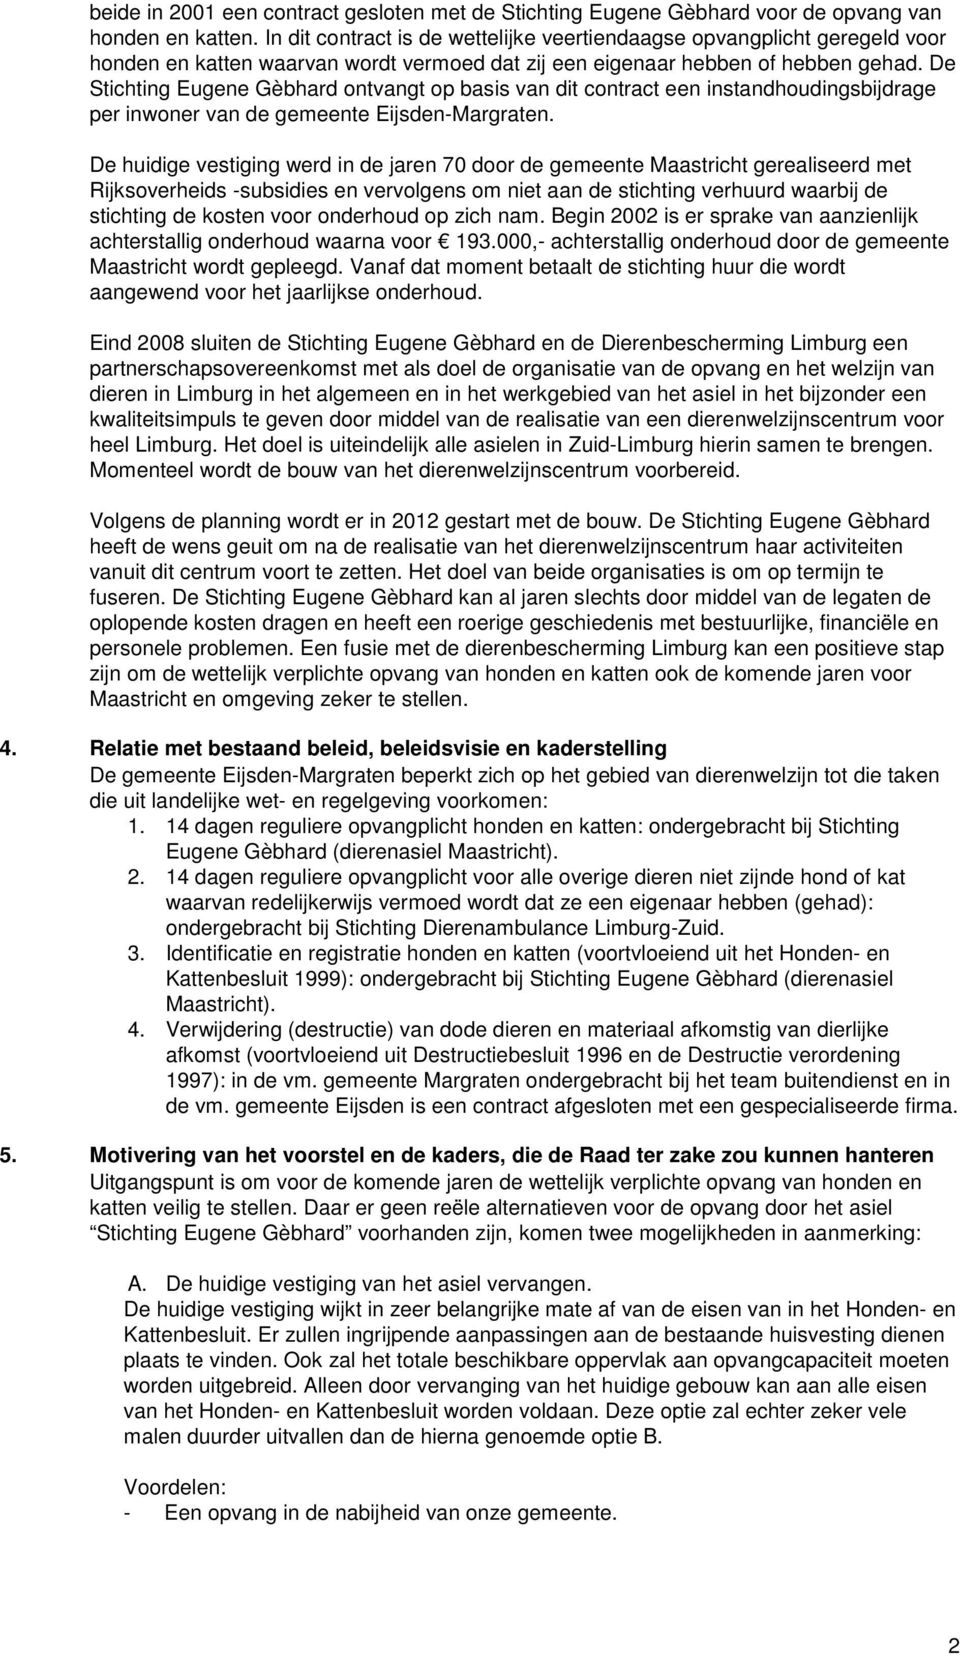 De Stichting Eugene Gèbhard ontvangt op basis van dit contract een instandhoudingsbijdrage per inwoner van de gemeente Eijsden-Margraten.